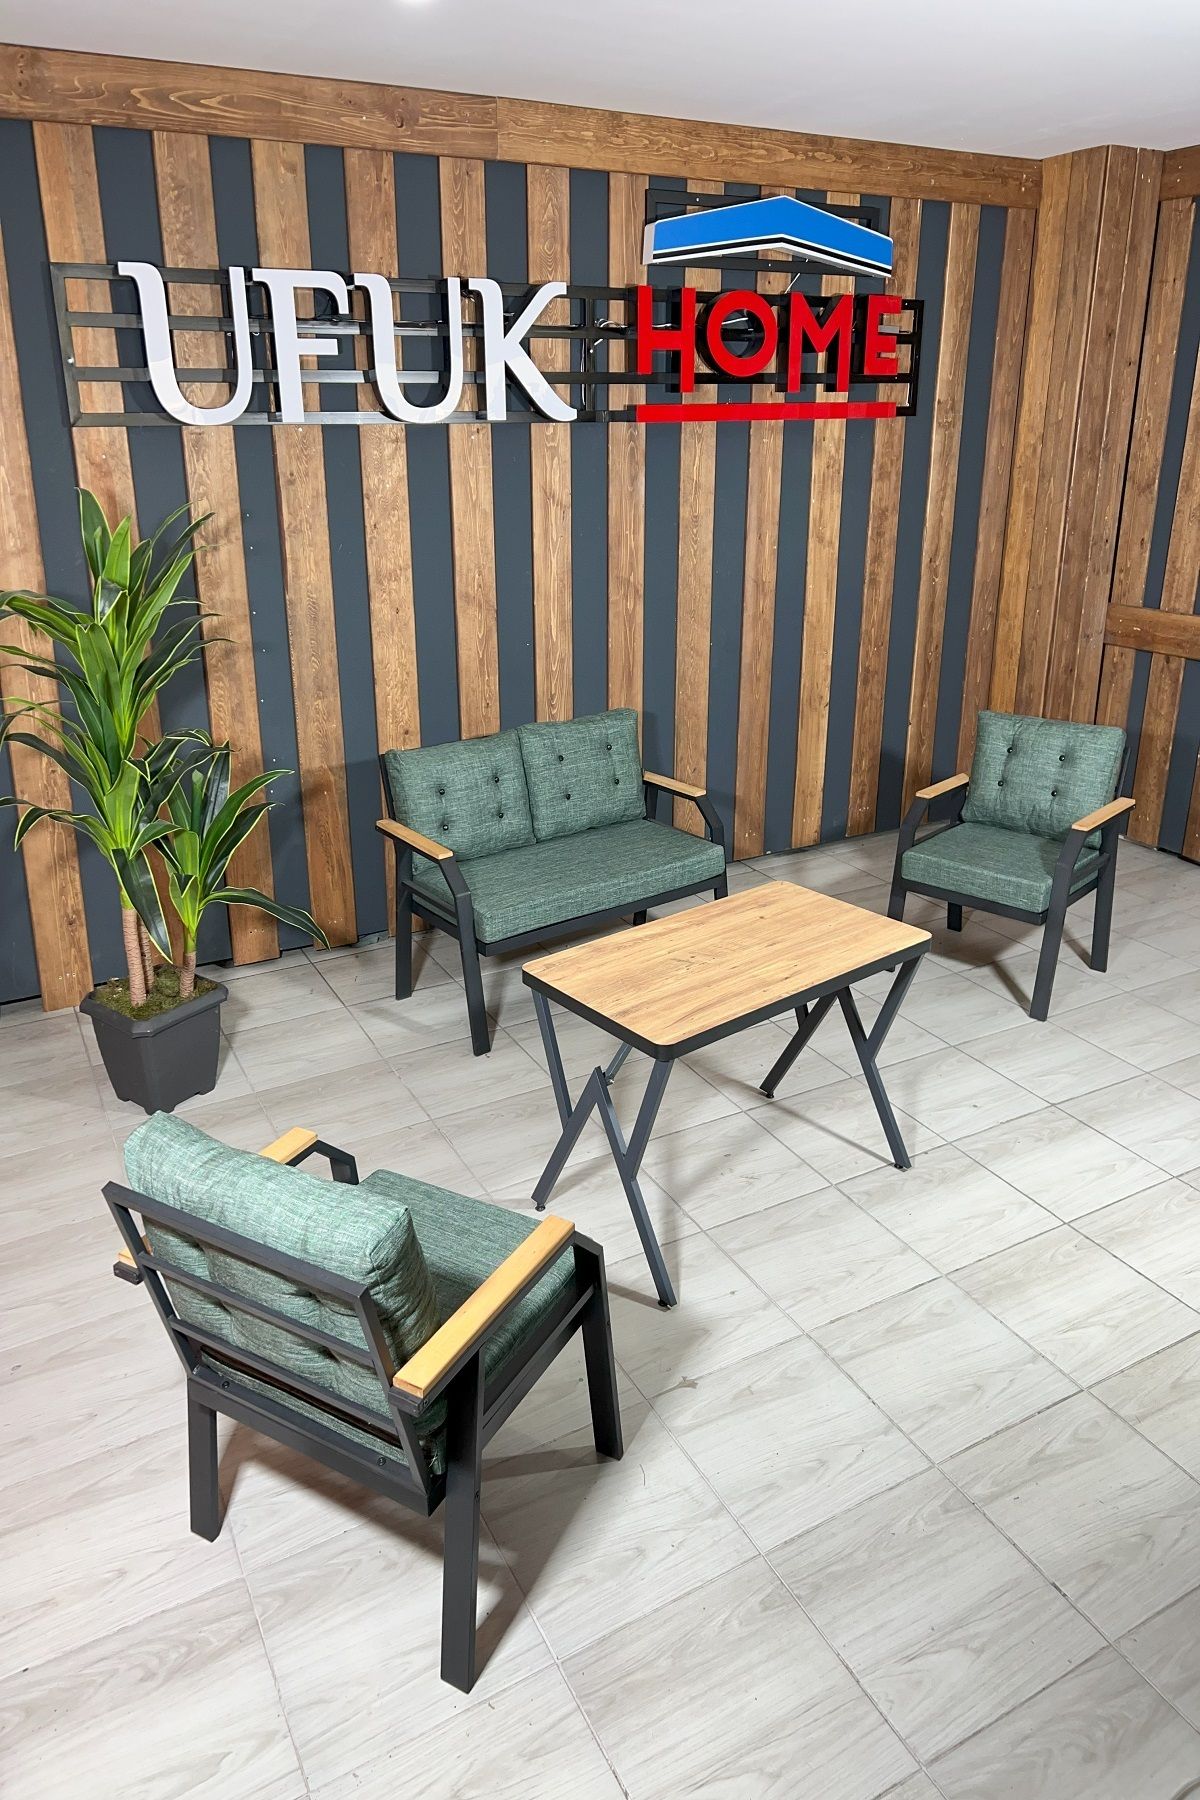 UFUK HOME Kavacık 2+1+1+ Masa Bahçe Mobilyası, Balkon Çay Seti, Bahçe Koltuk Takımı